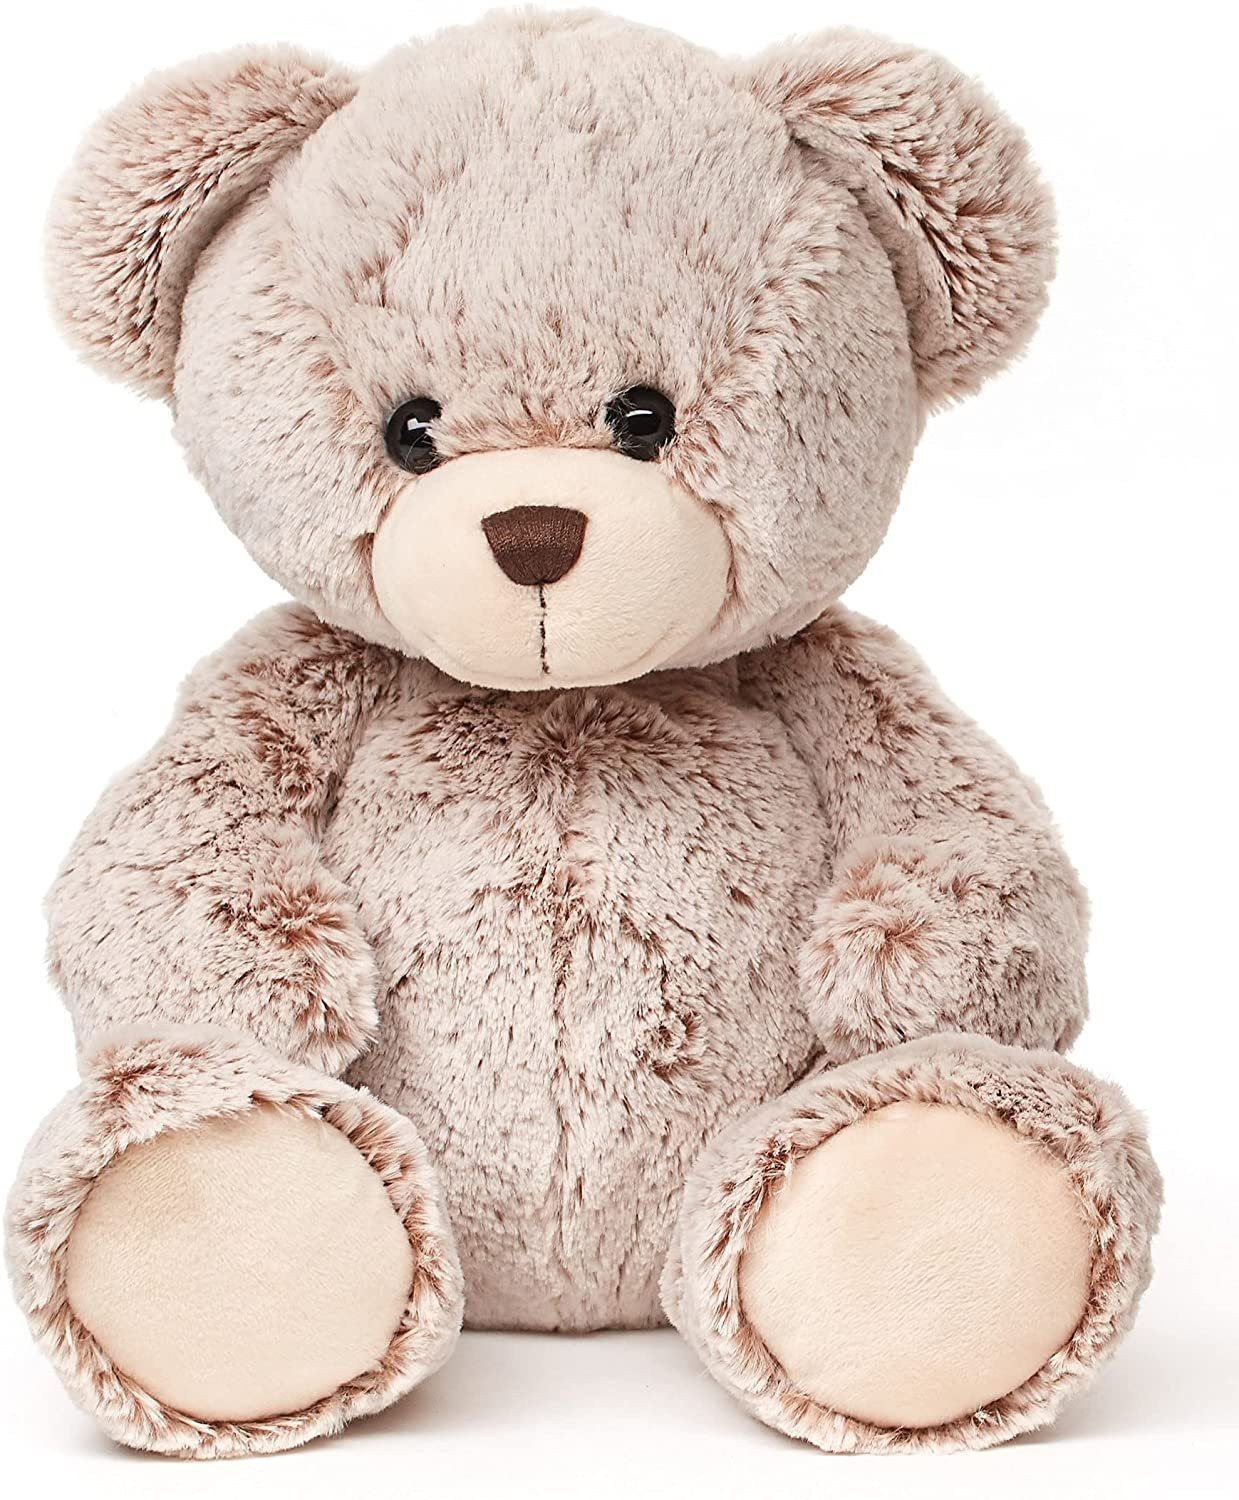 Plüschtier Bär Teddybär Kuschelig Weich Größe ca 17 cm Farbe Braun 